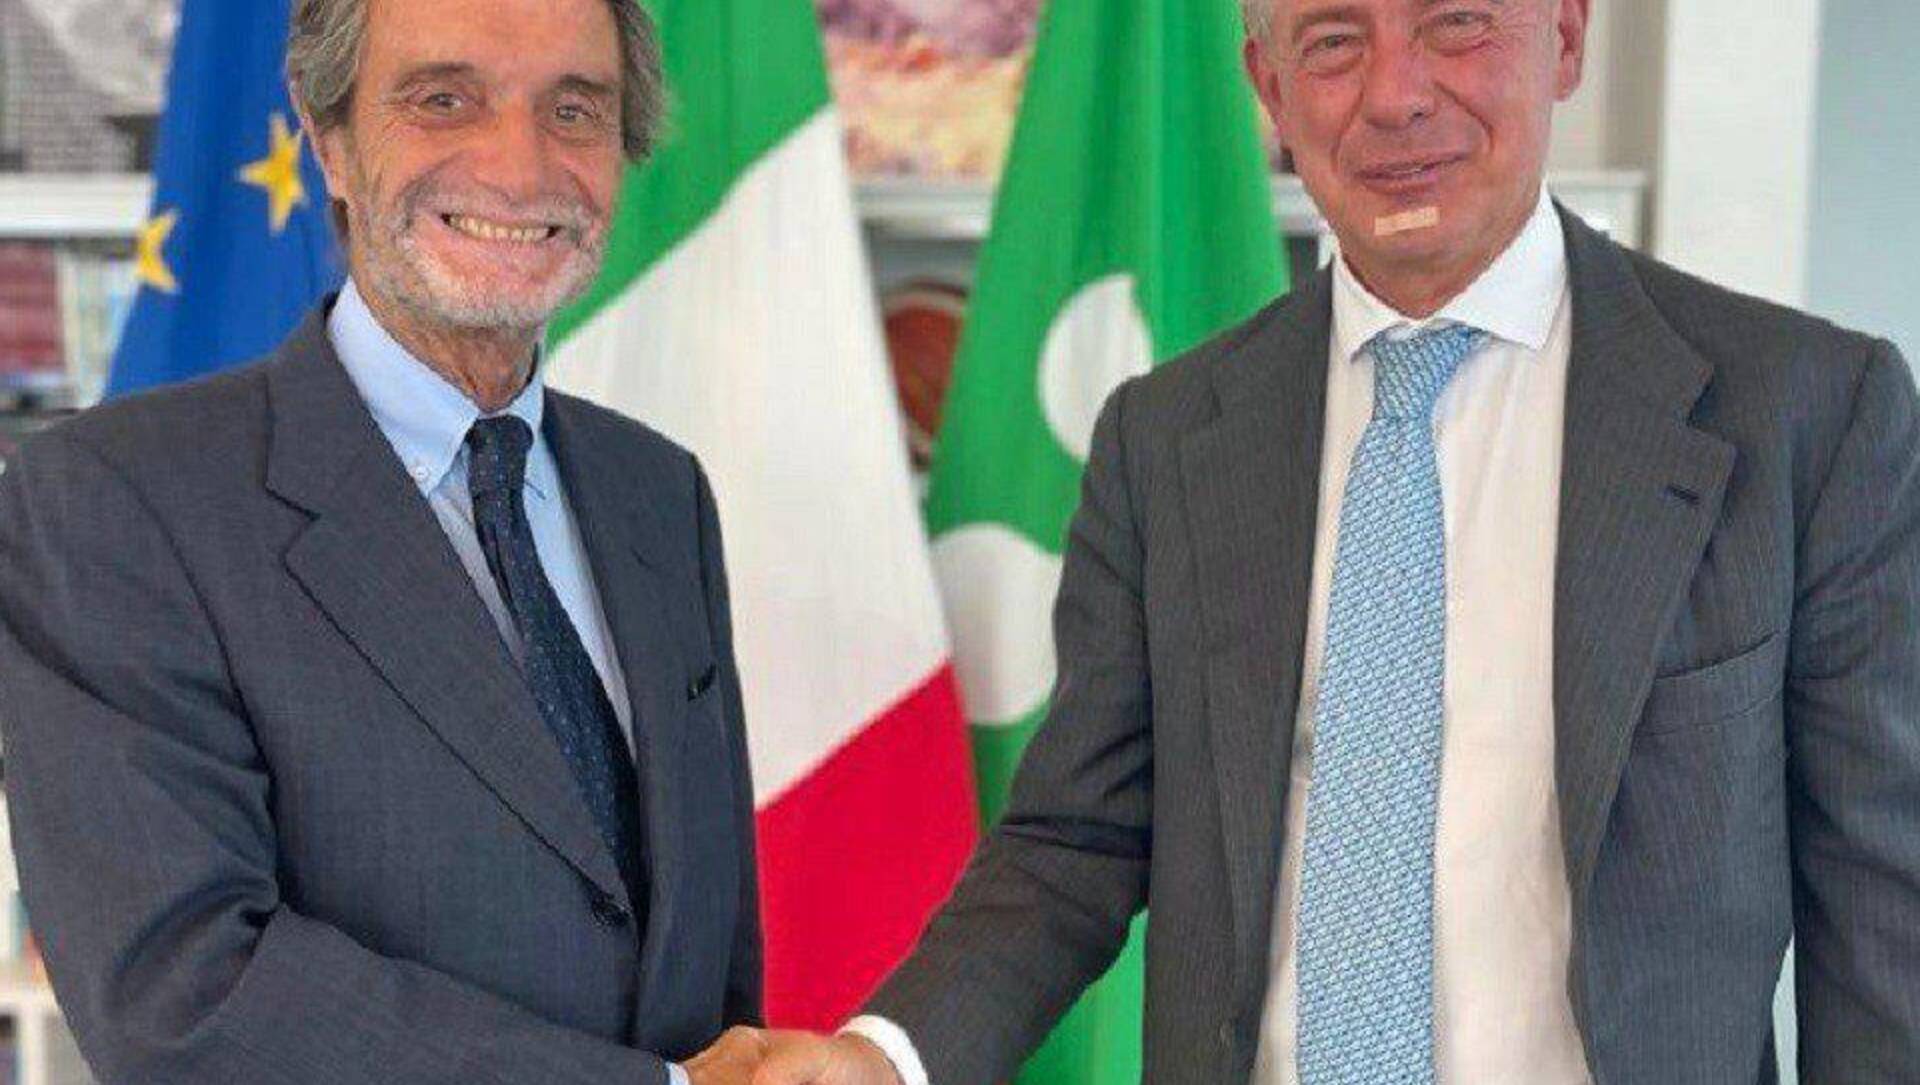 Il governatore Fontana incontra il ministro per il Made in Italy: “Lombardia motore economico”